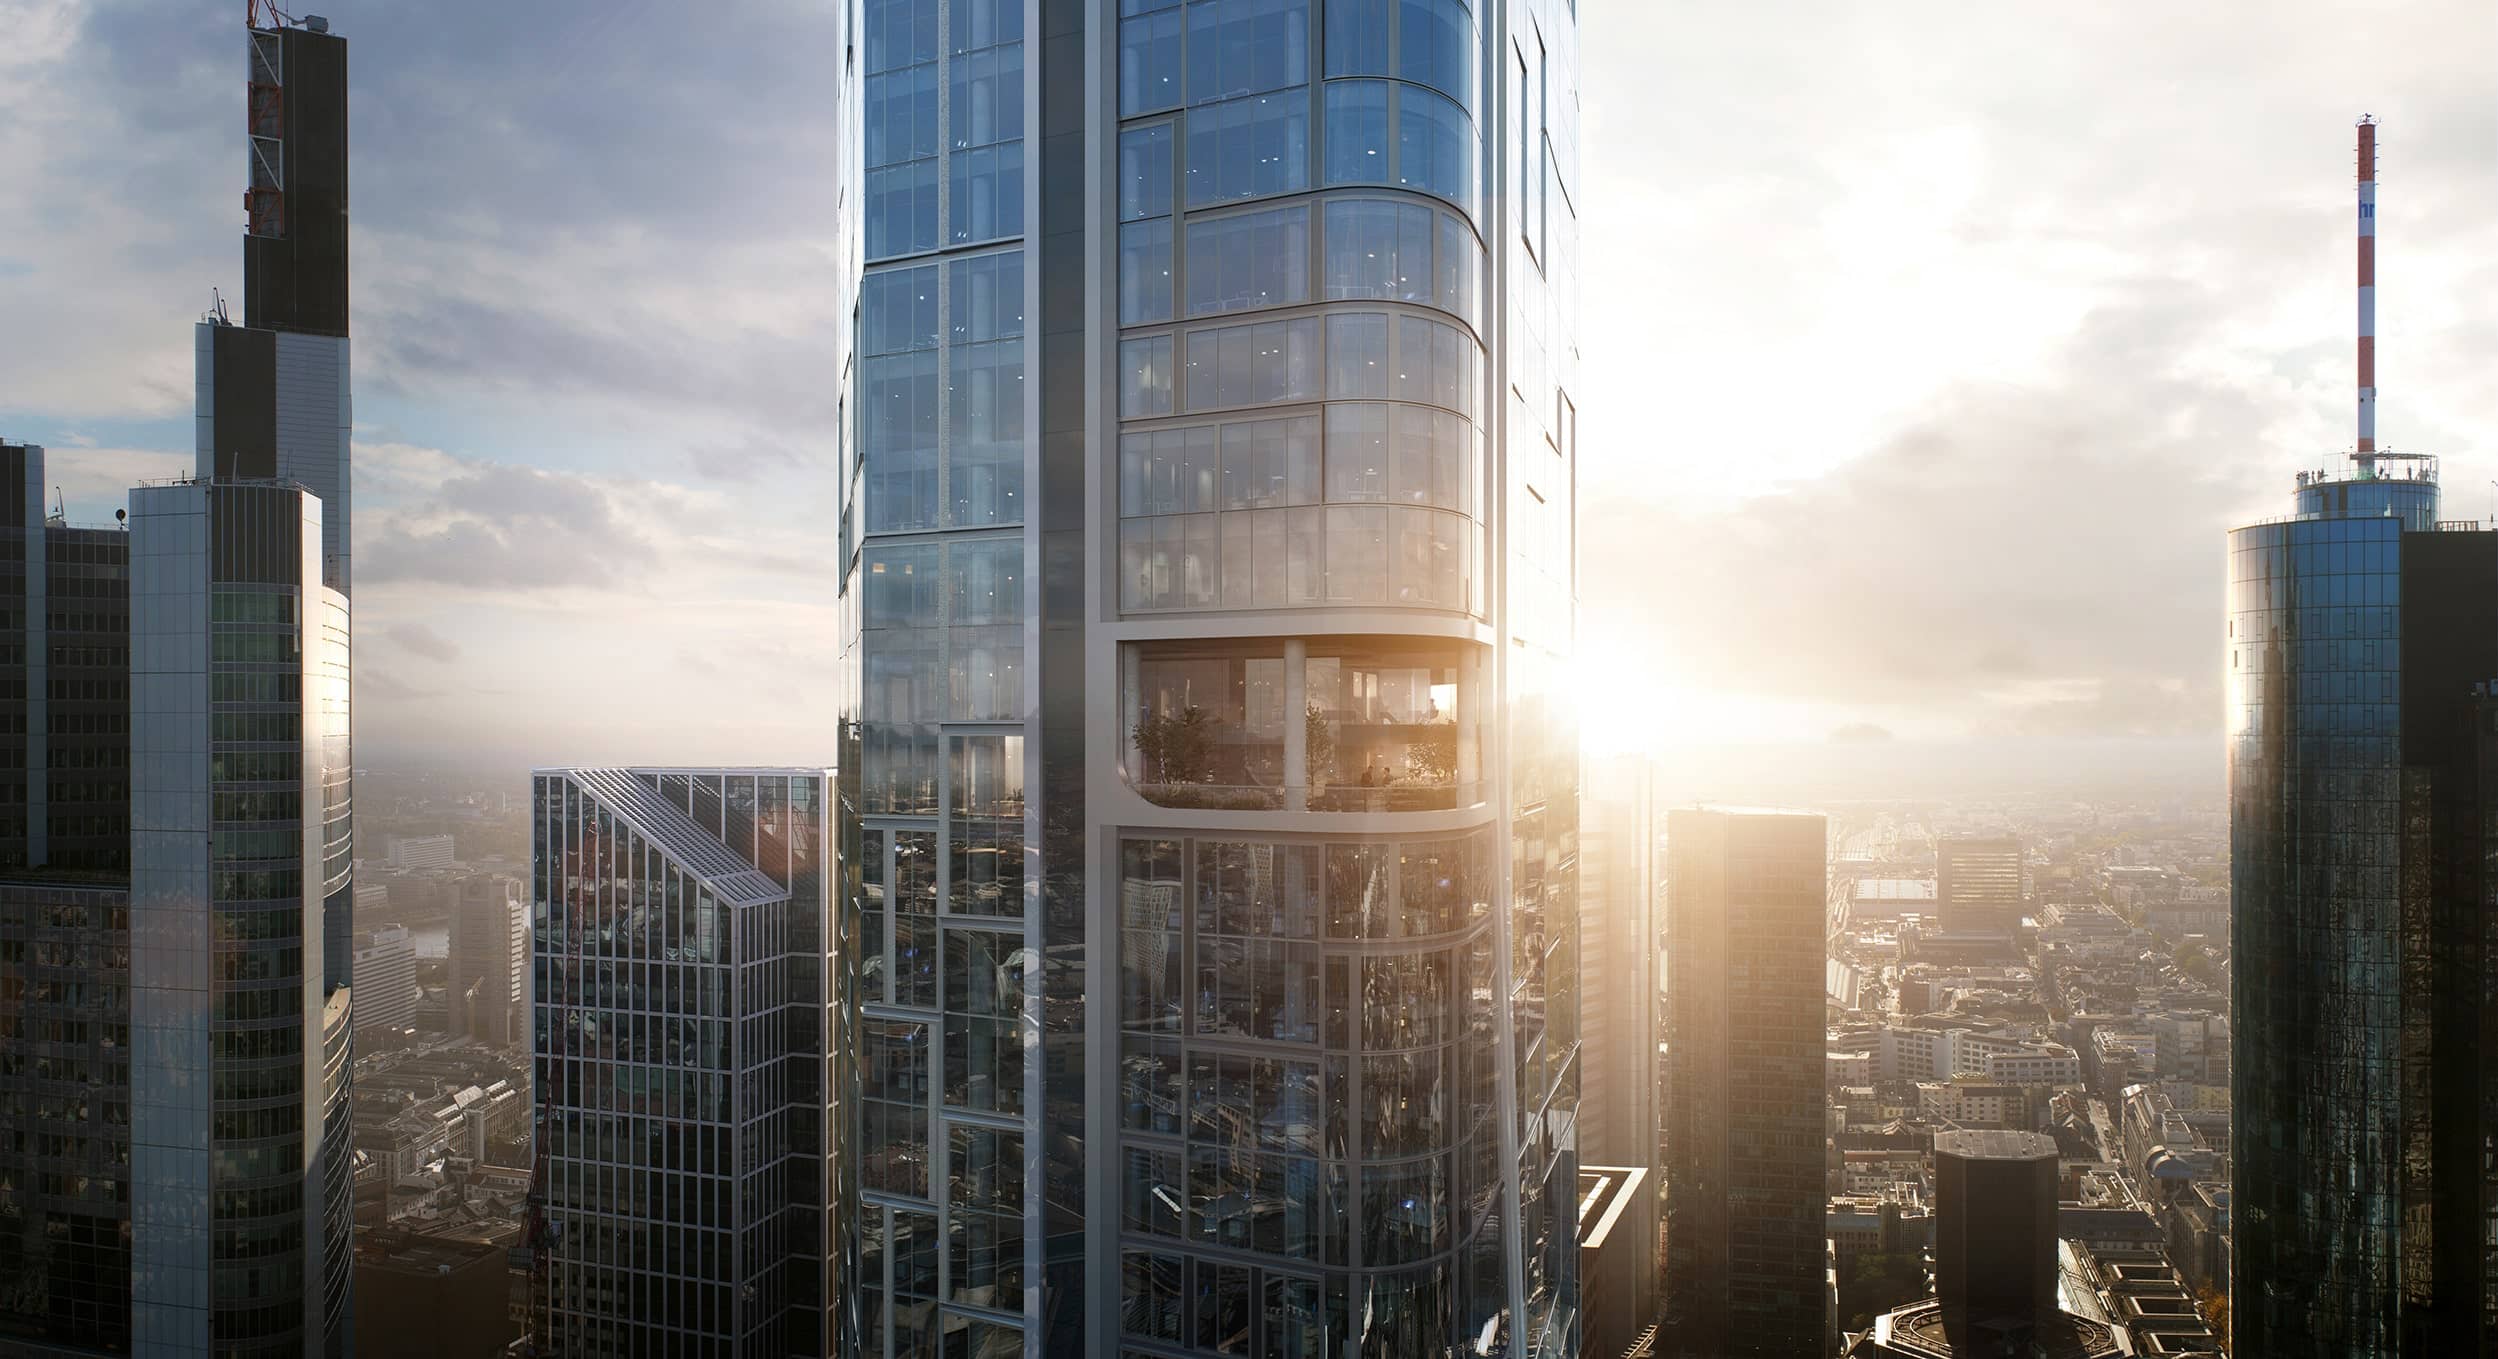 Aktuell entsteht in Frankfurt der Gebäudekomplex FOUR von UNStudio. Die vier Hochhäuser werden 228 Meter, 173 Meter, 120 Meter und 100 Meter hoch sein. Rendering: © UNStudio